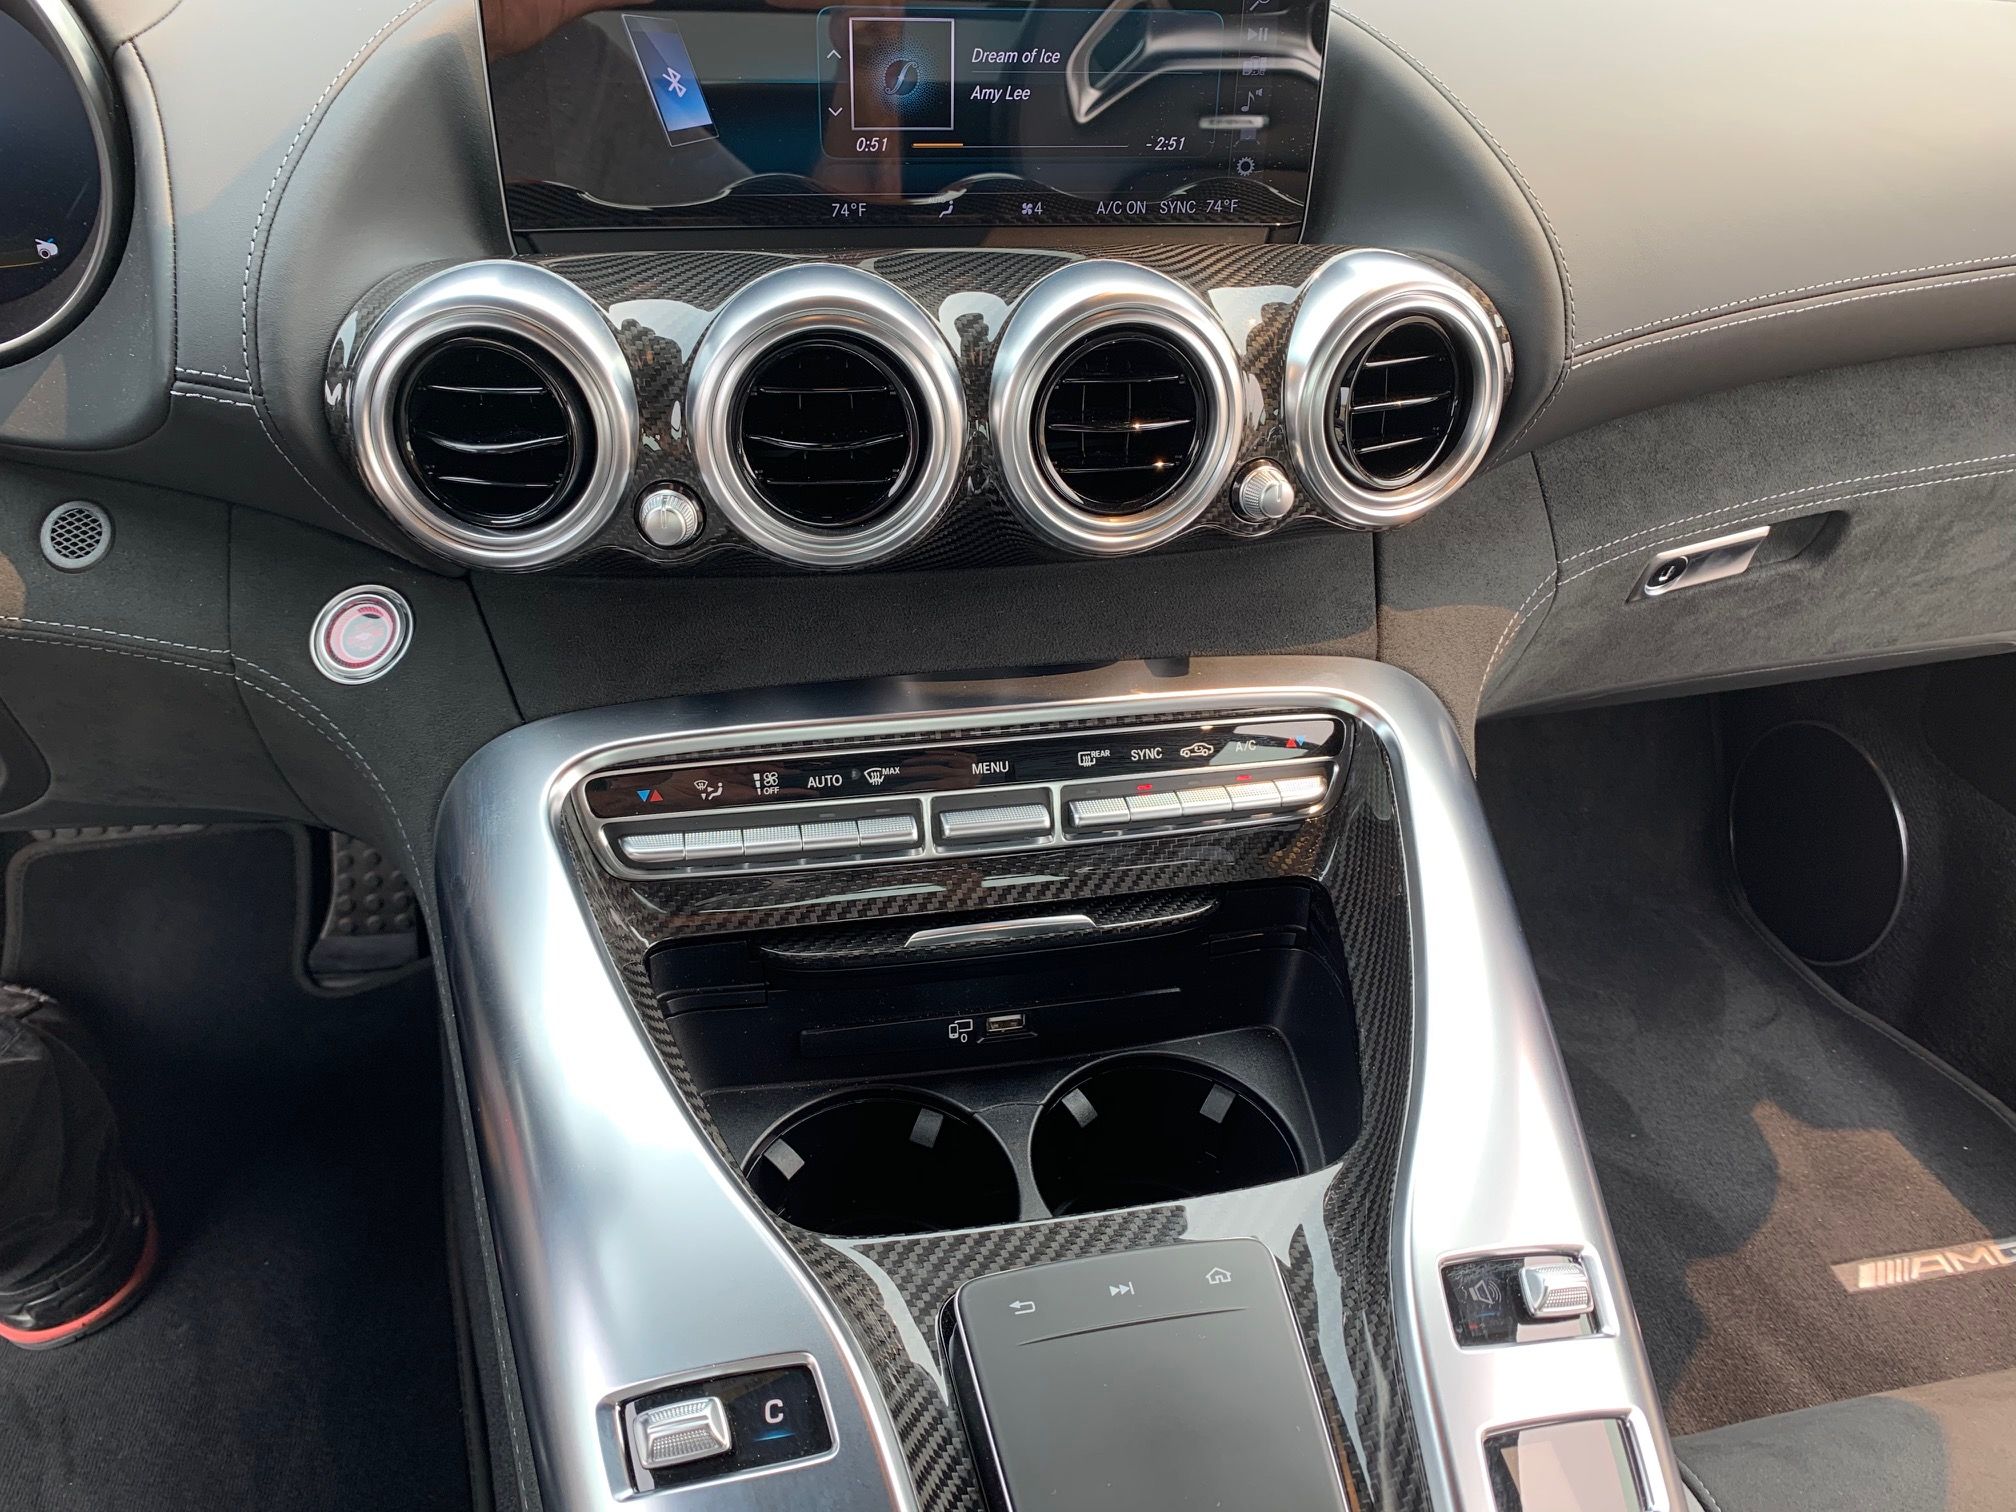 2020 Mercedes-AMG GT C - Driven